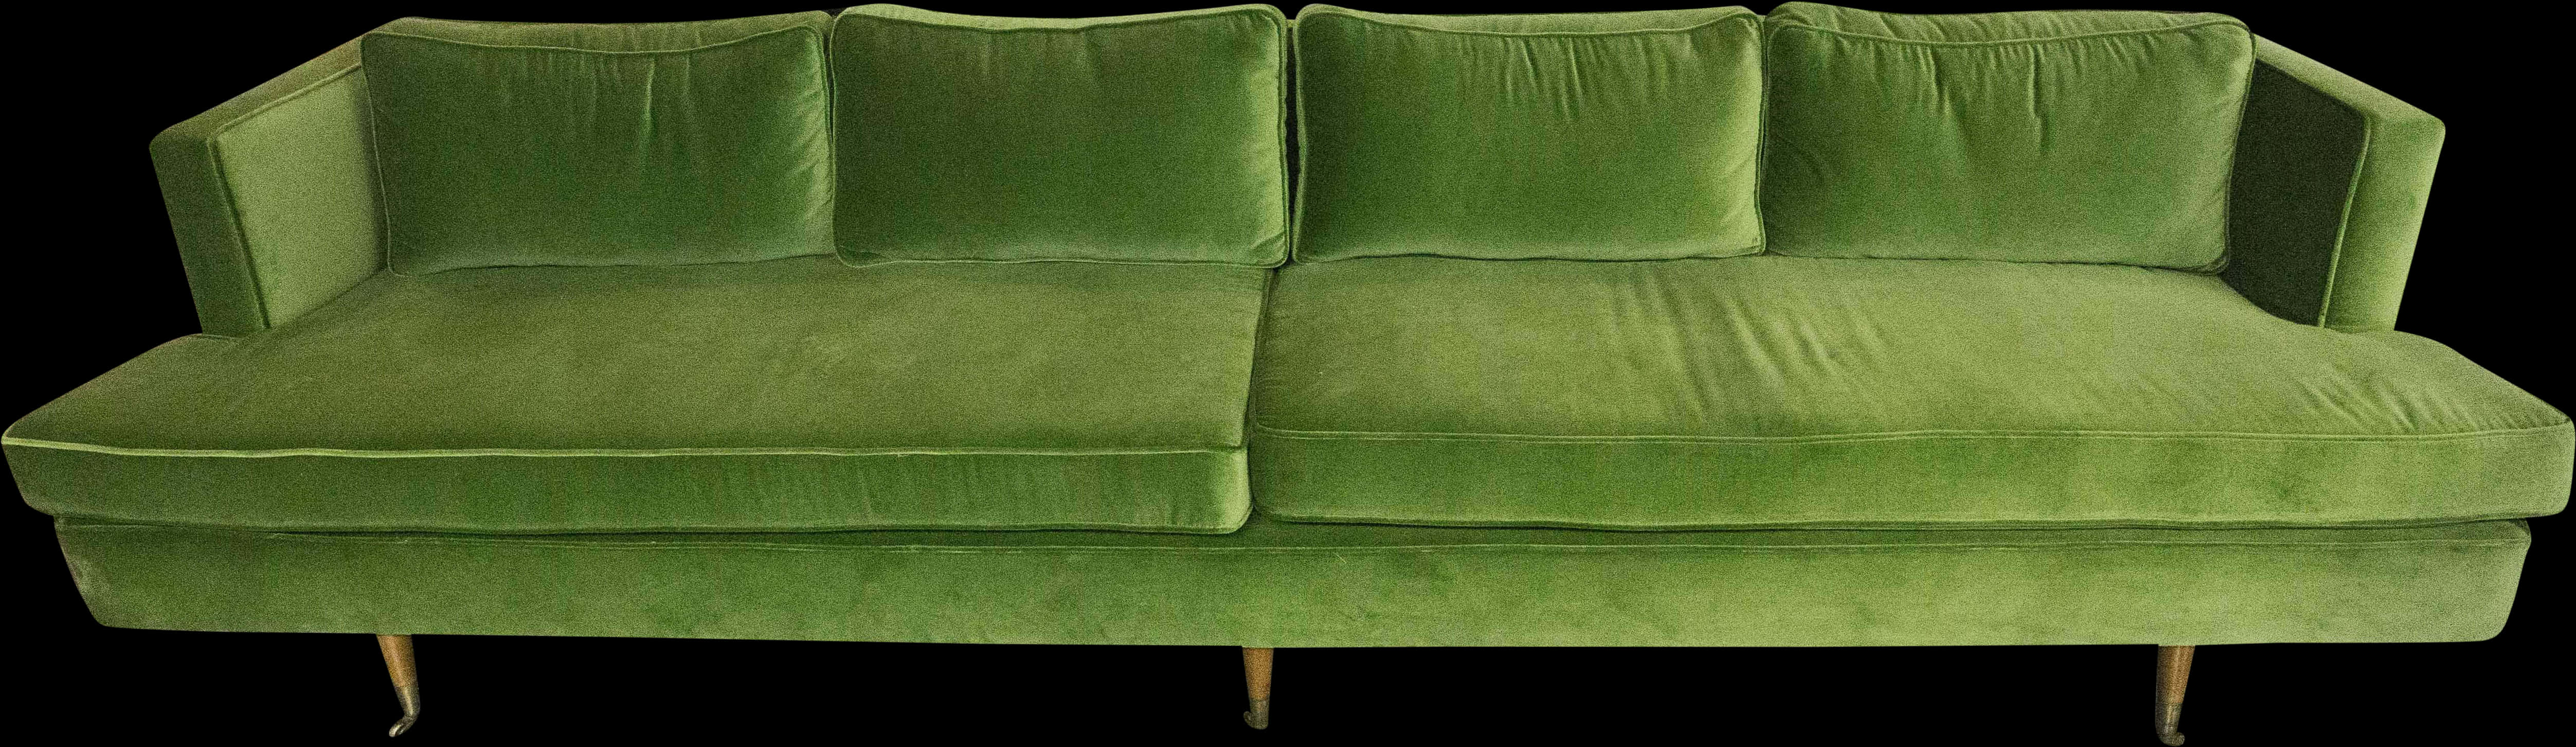 Green Velvet Sofa Elegant Design PNG